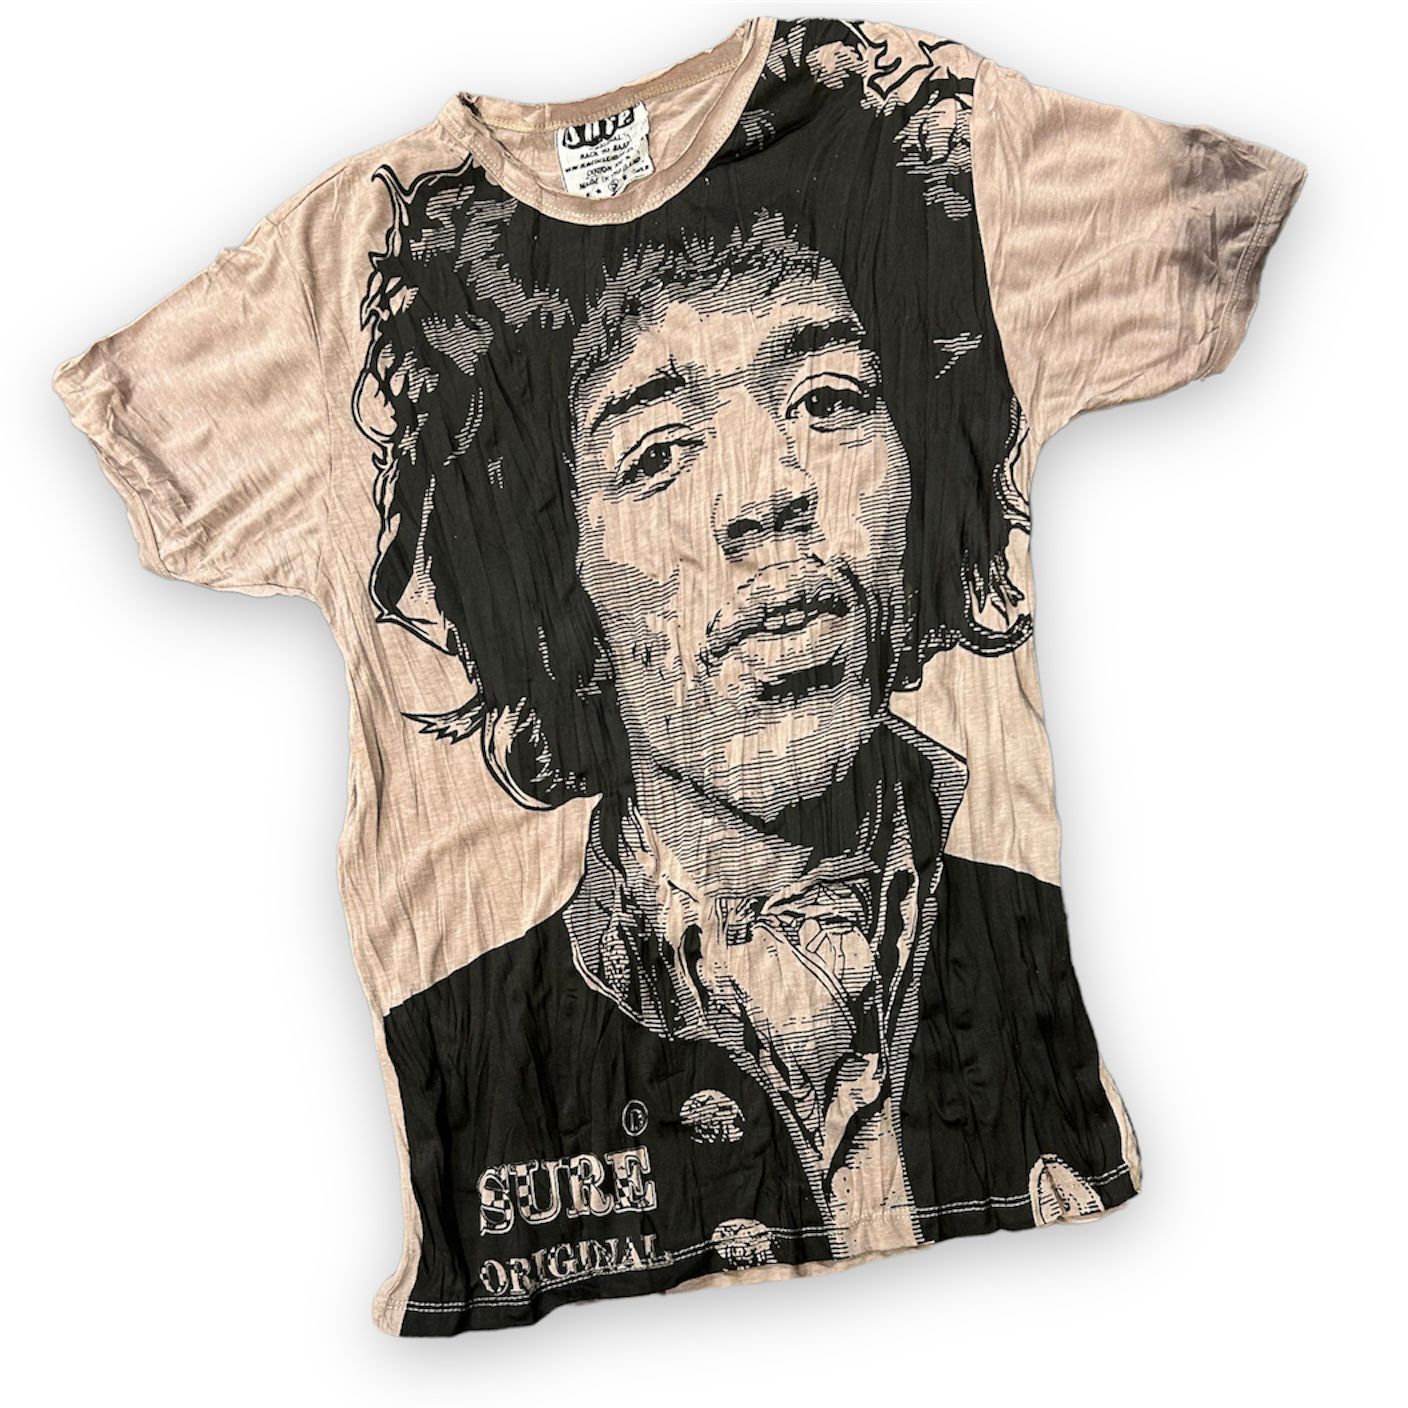 Hendrix Headlines Men's T-shirt By Sure